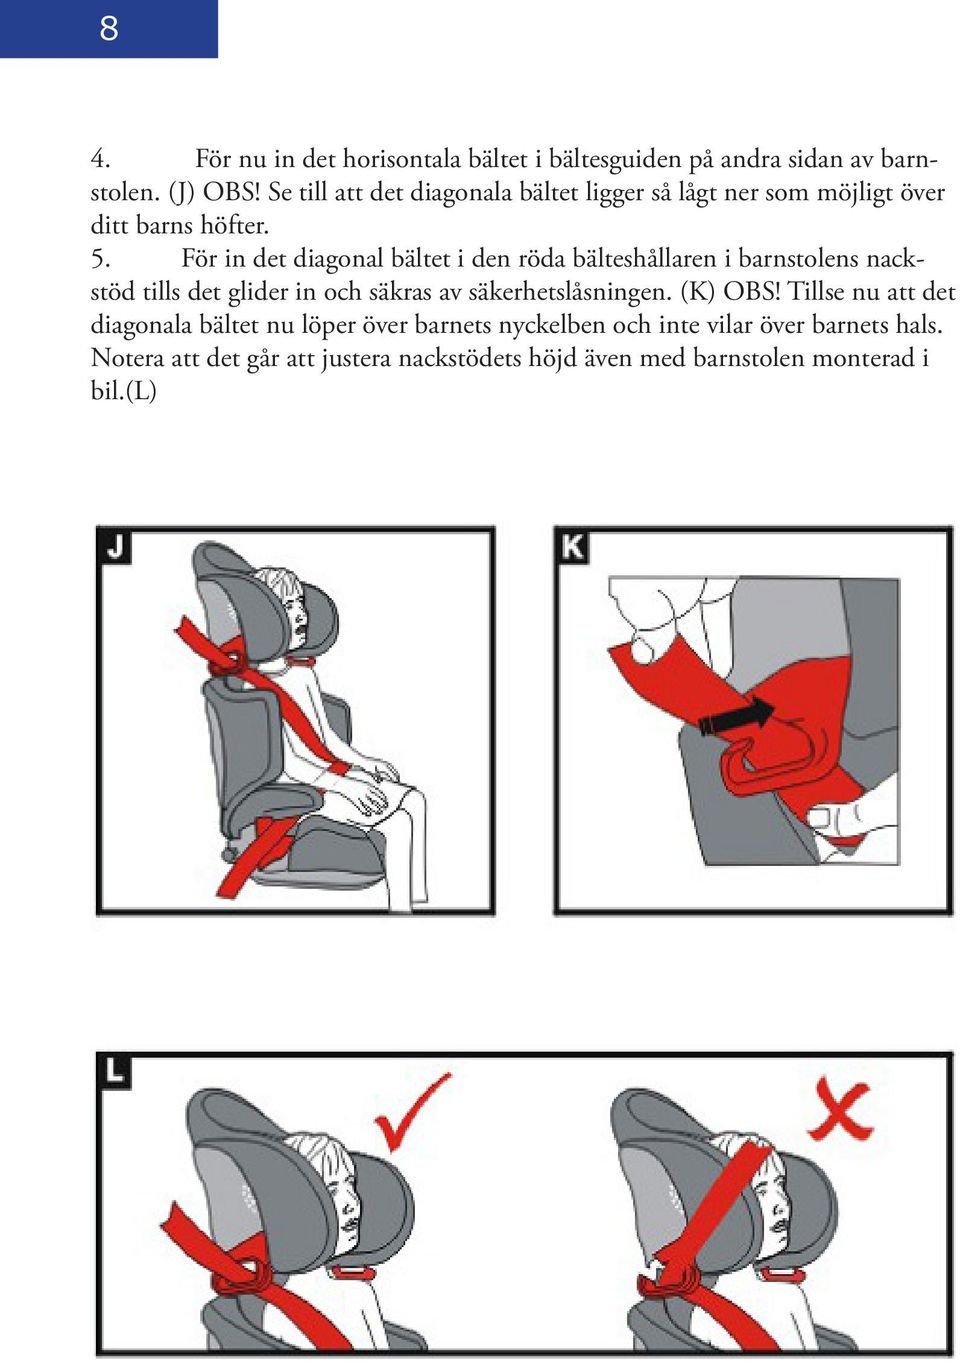 För in det diagonal bältet i den röda bälteshållaren i barnstolens nackstöd tills det glider in och säkras av